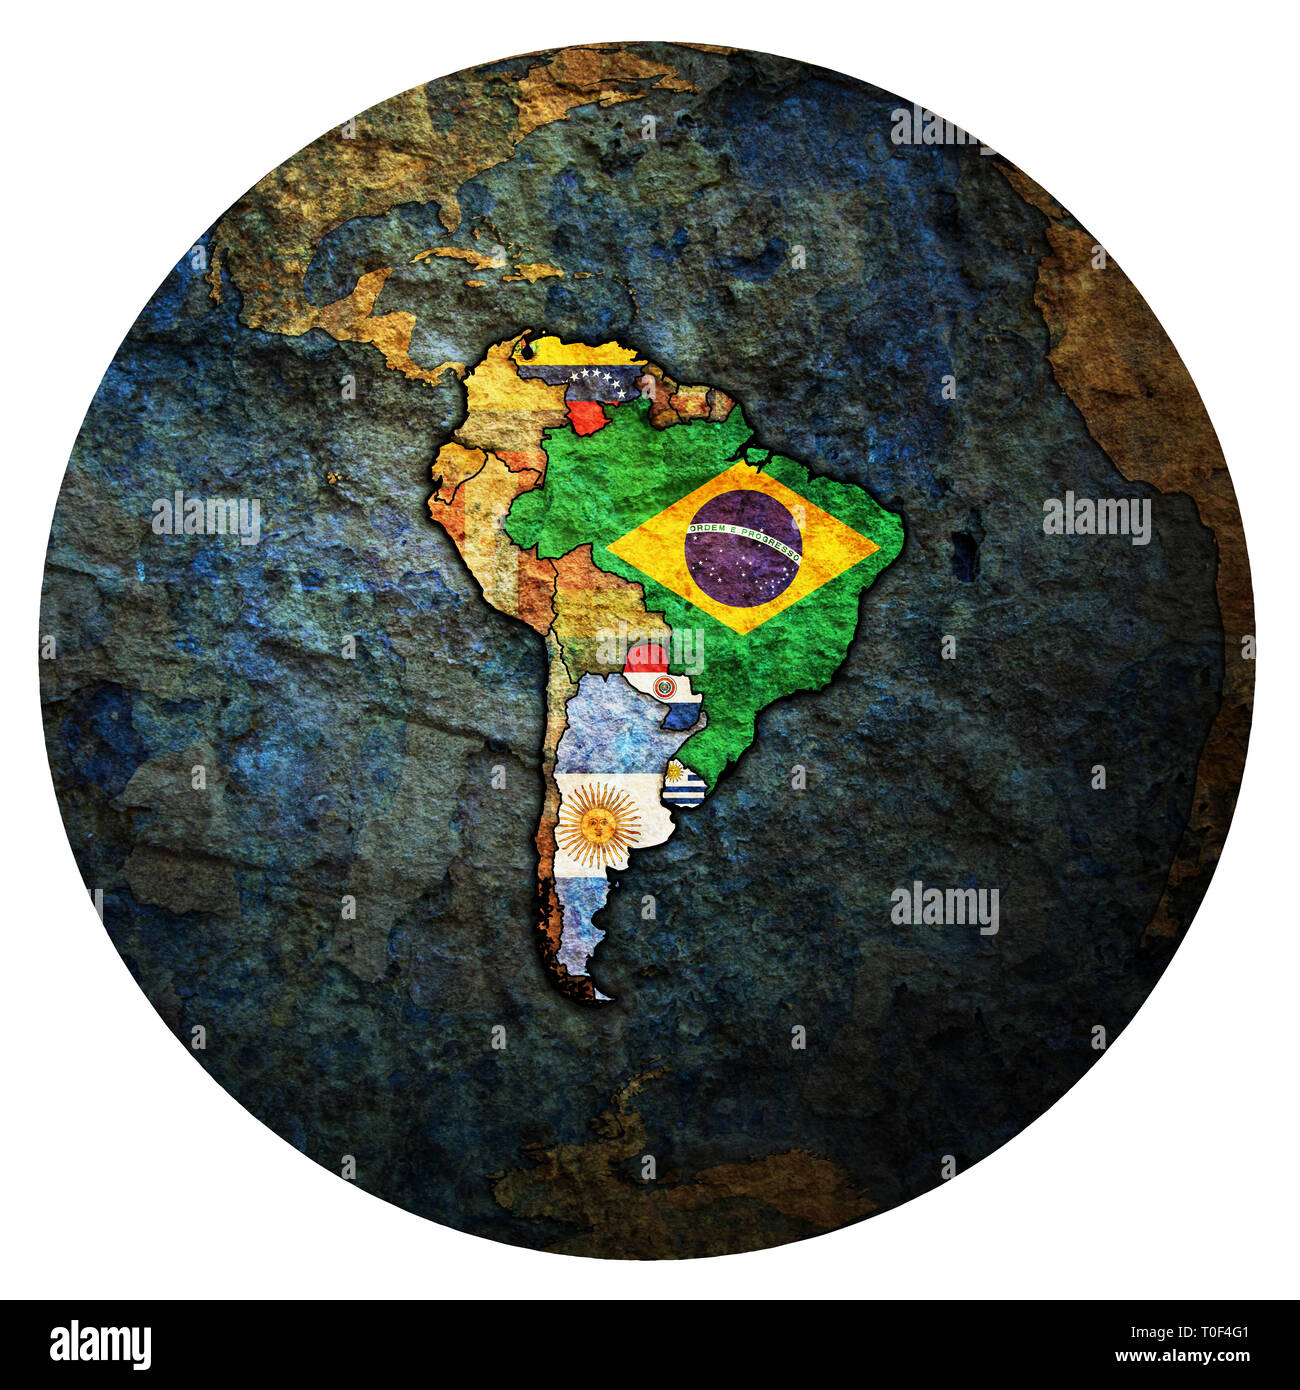 Las banderas de los países miembros del Mercosur, oficialmente llamado Mercado Común del Sur en el mapa político del mundo Foto de stock